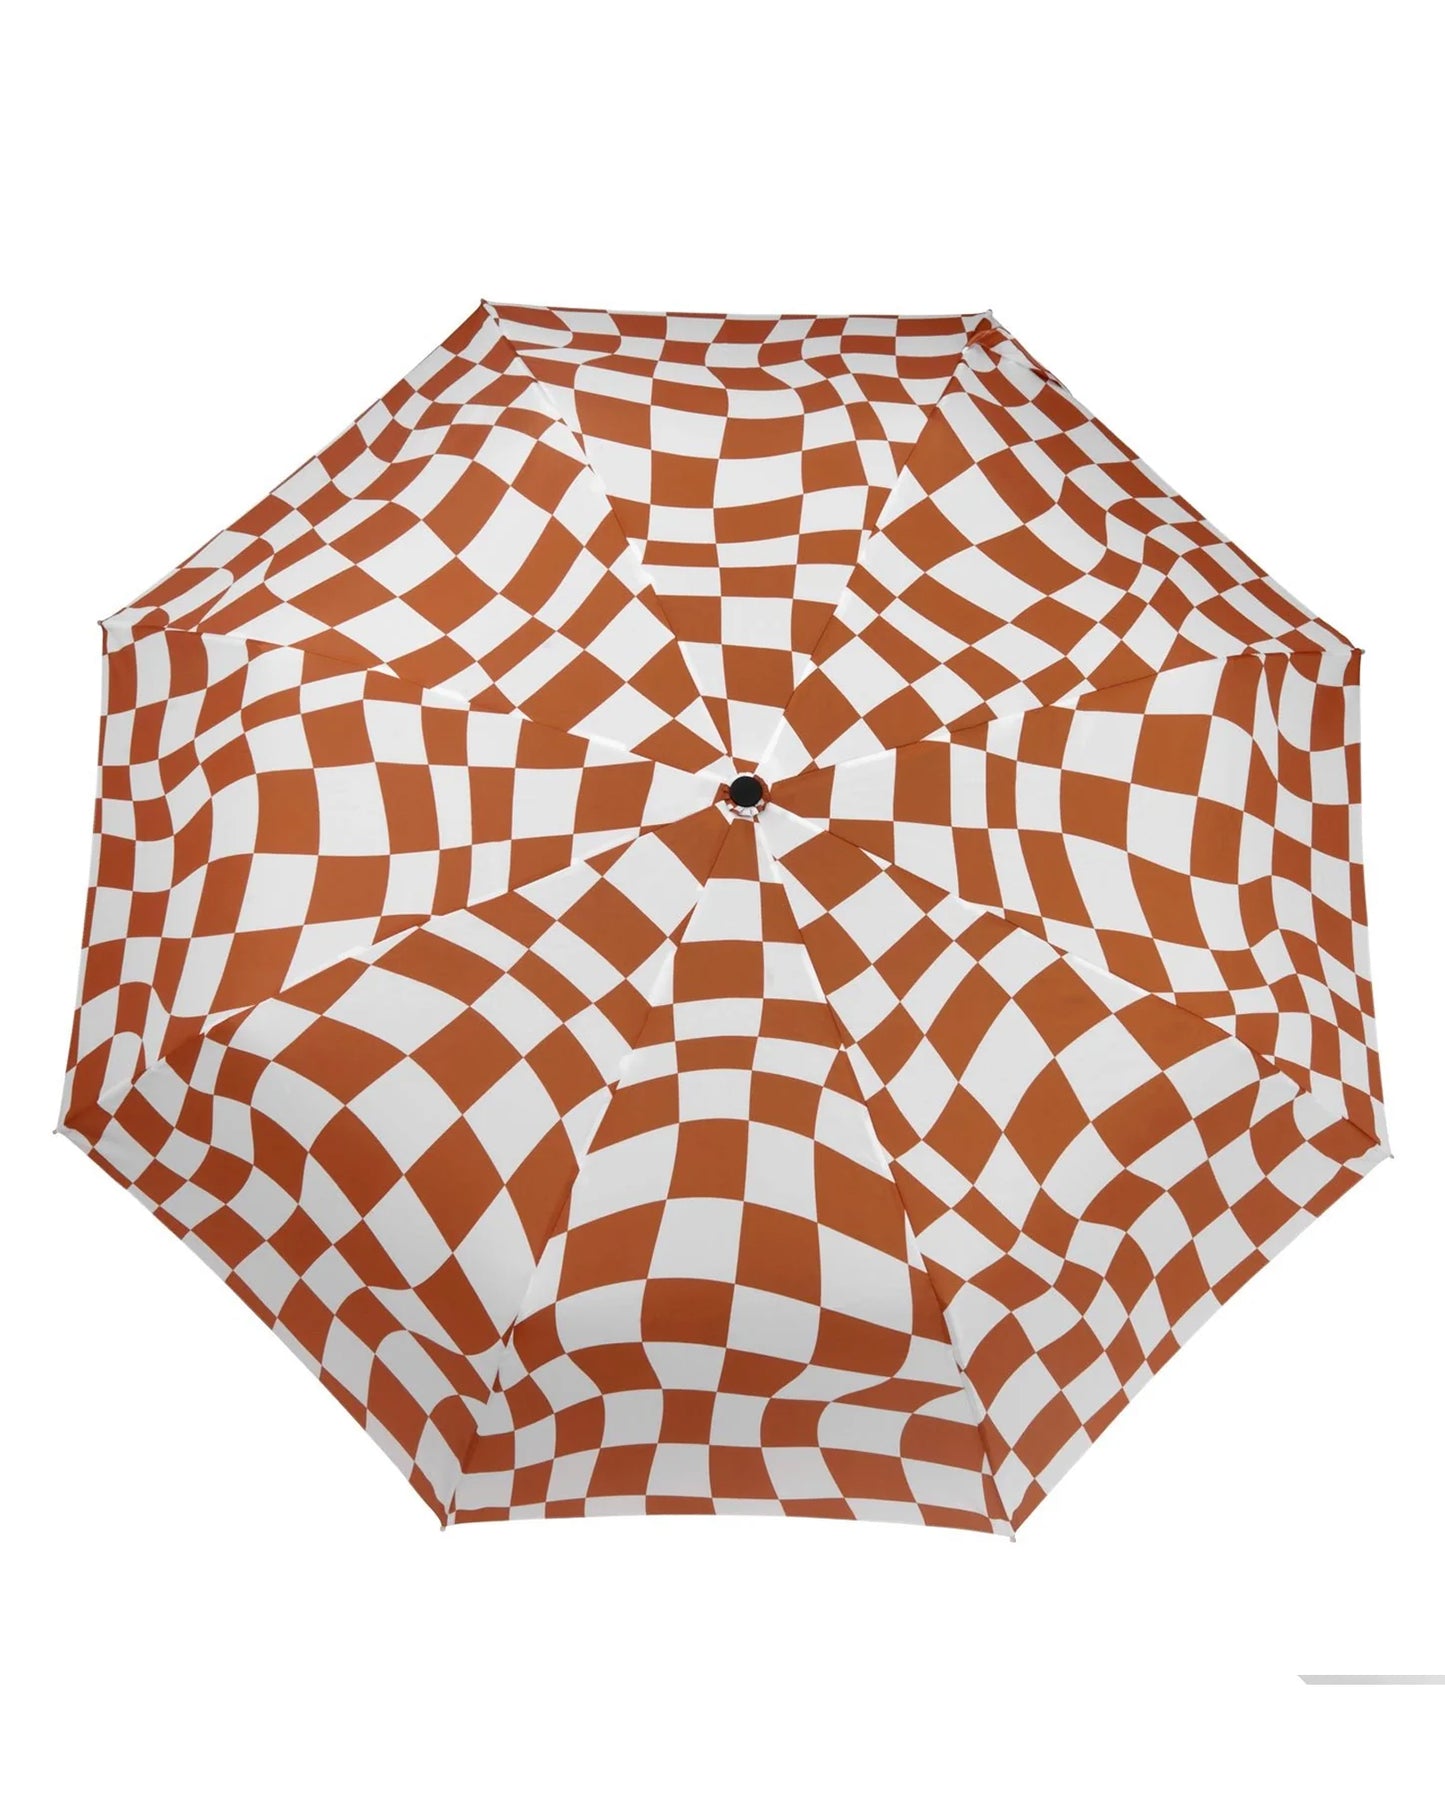 ORIGINAL DUCKHEAD Compact Umbrella in Peanut Butter Checkers